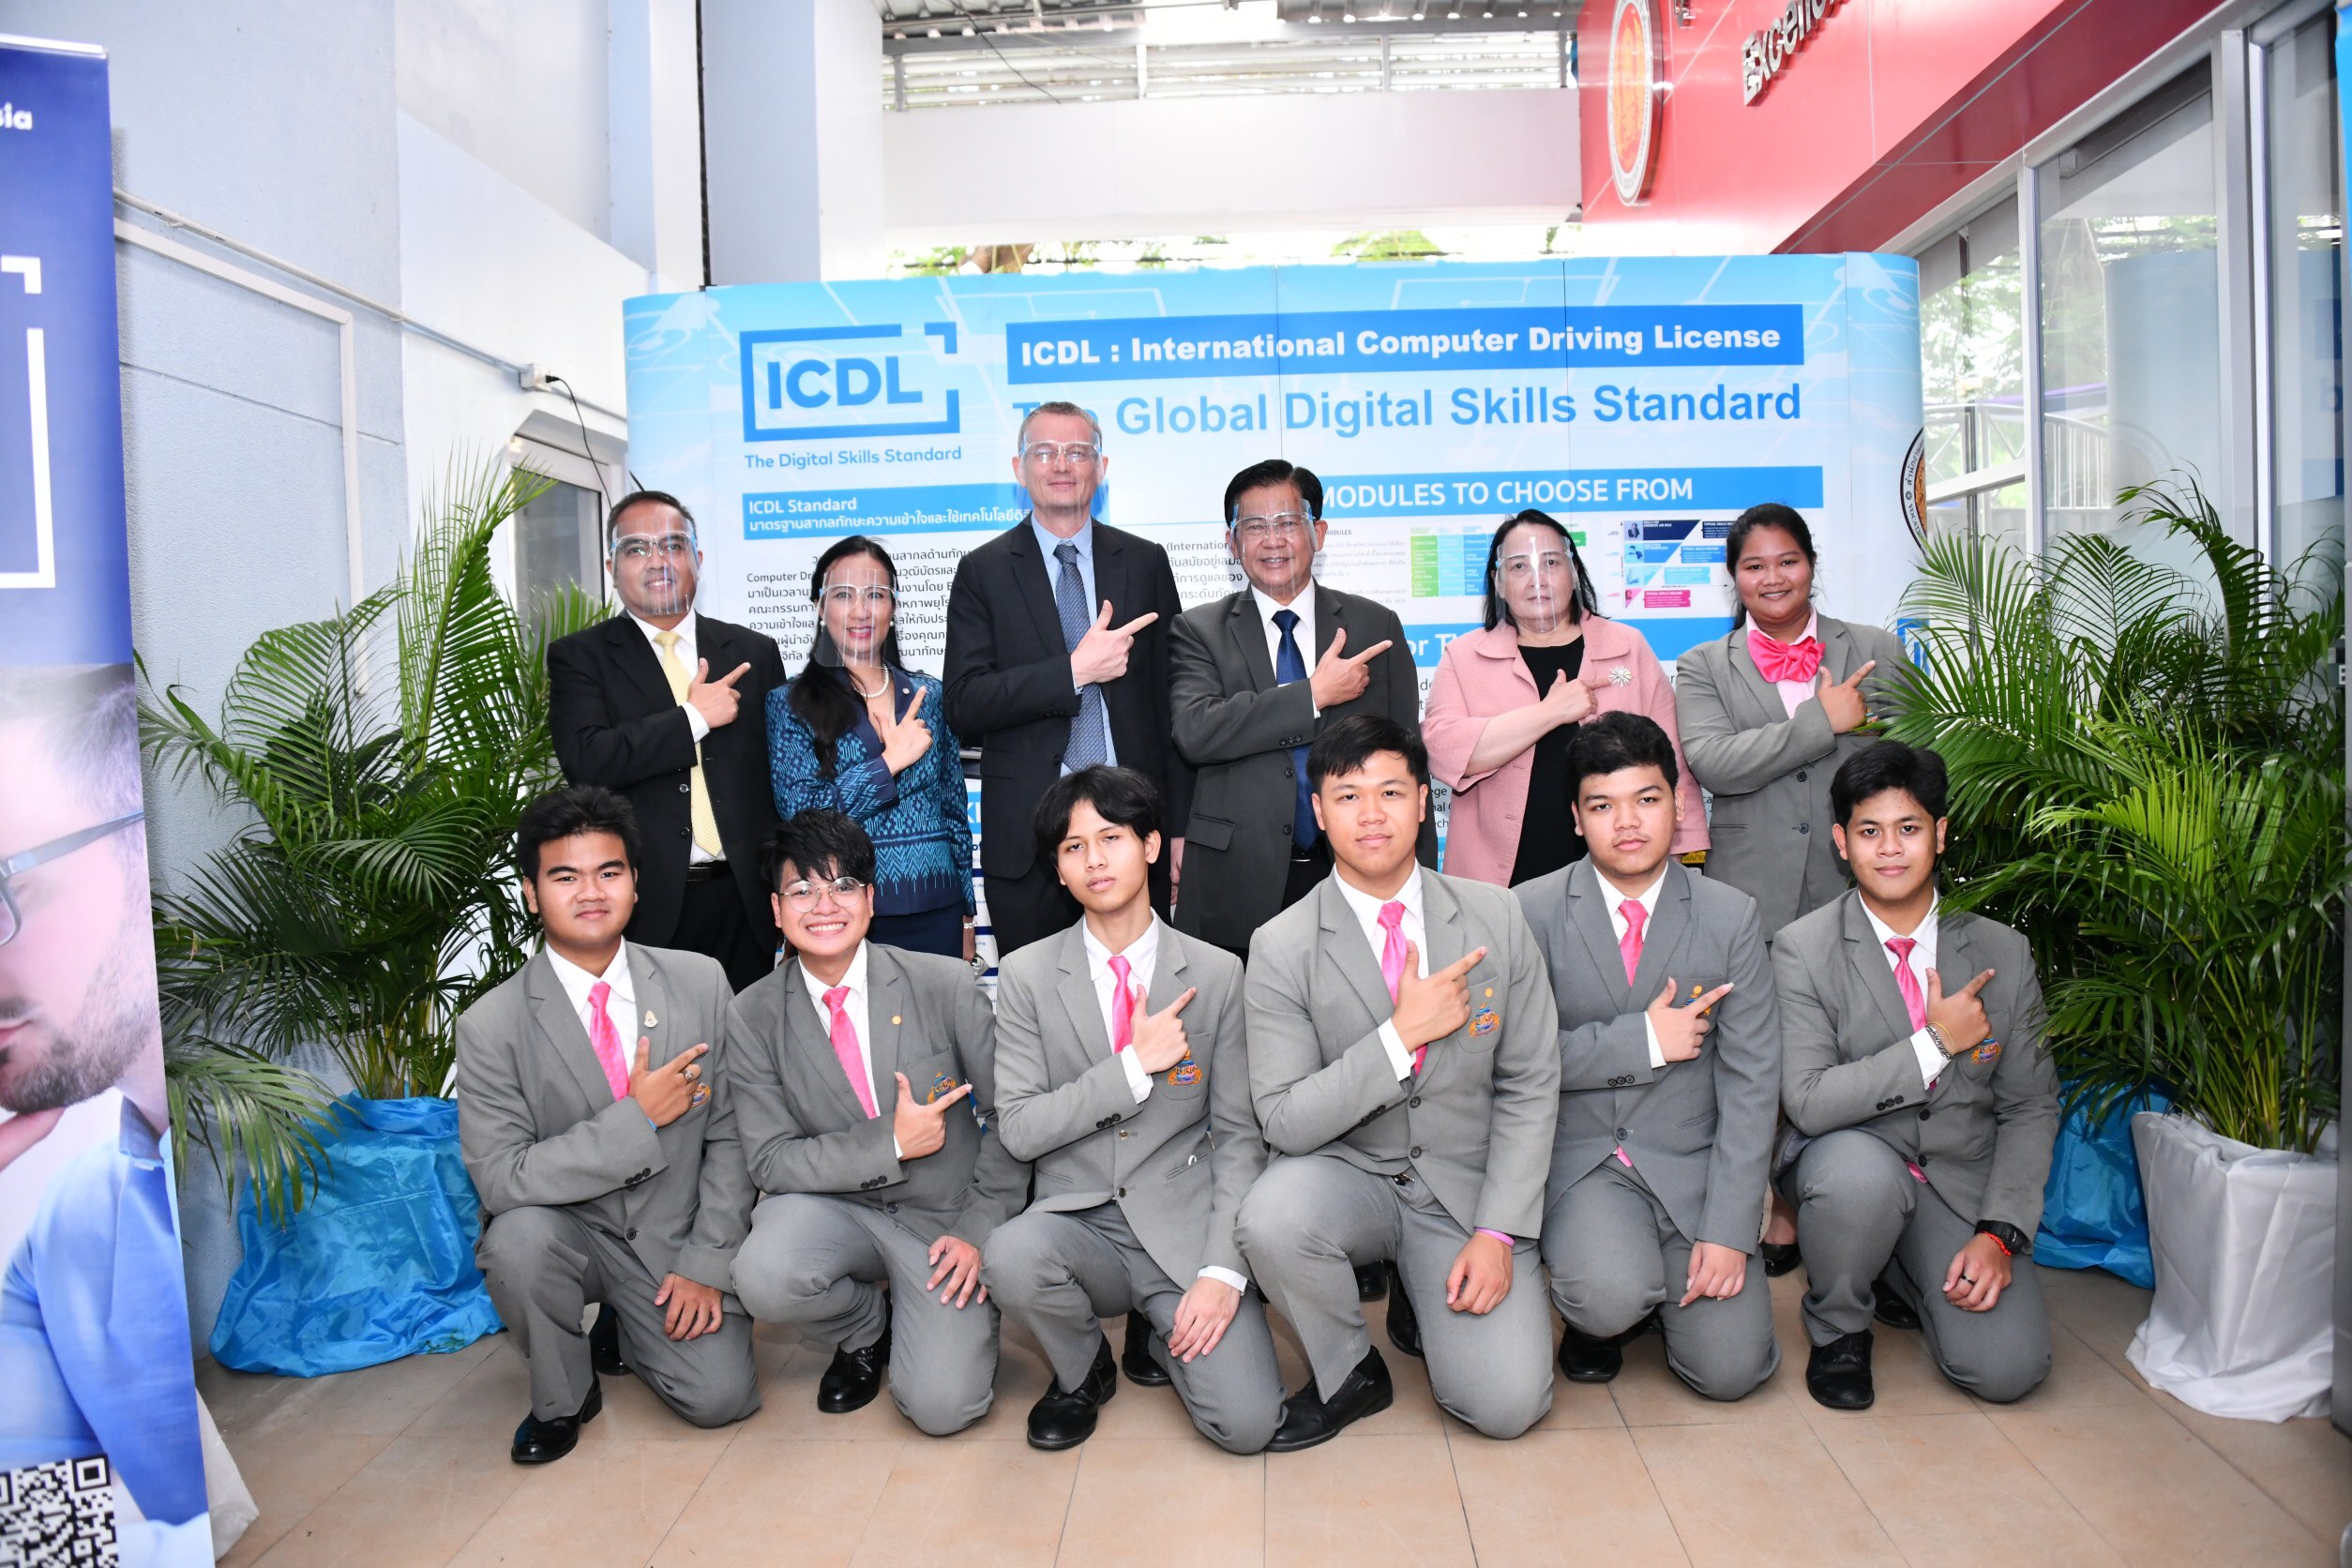 สอศ. จับมือ ICDL Thailand ยกระดับความรู้และทักษะการใช้เทคโนโลยีดิจิทัลต่อยอดเรียนรู้ และพร้อมทำงานในวิถีชีวิตใหม่ (new Normal)